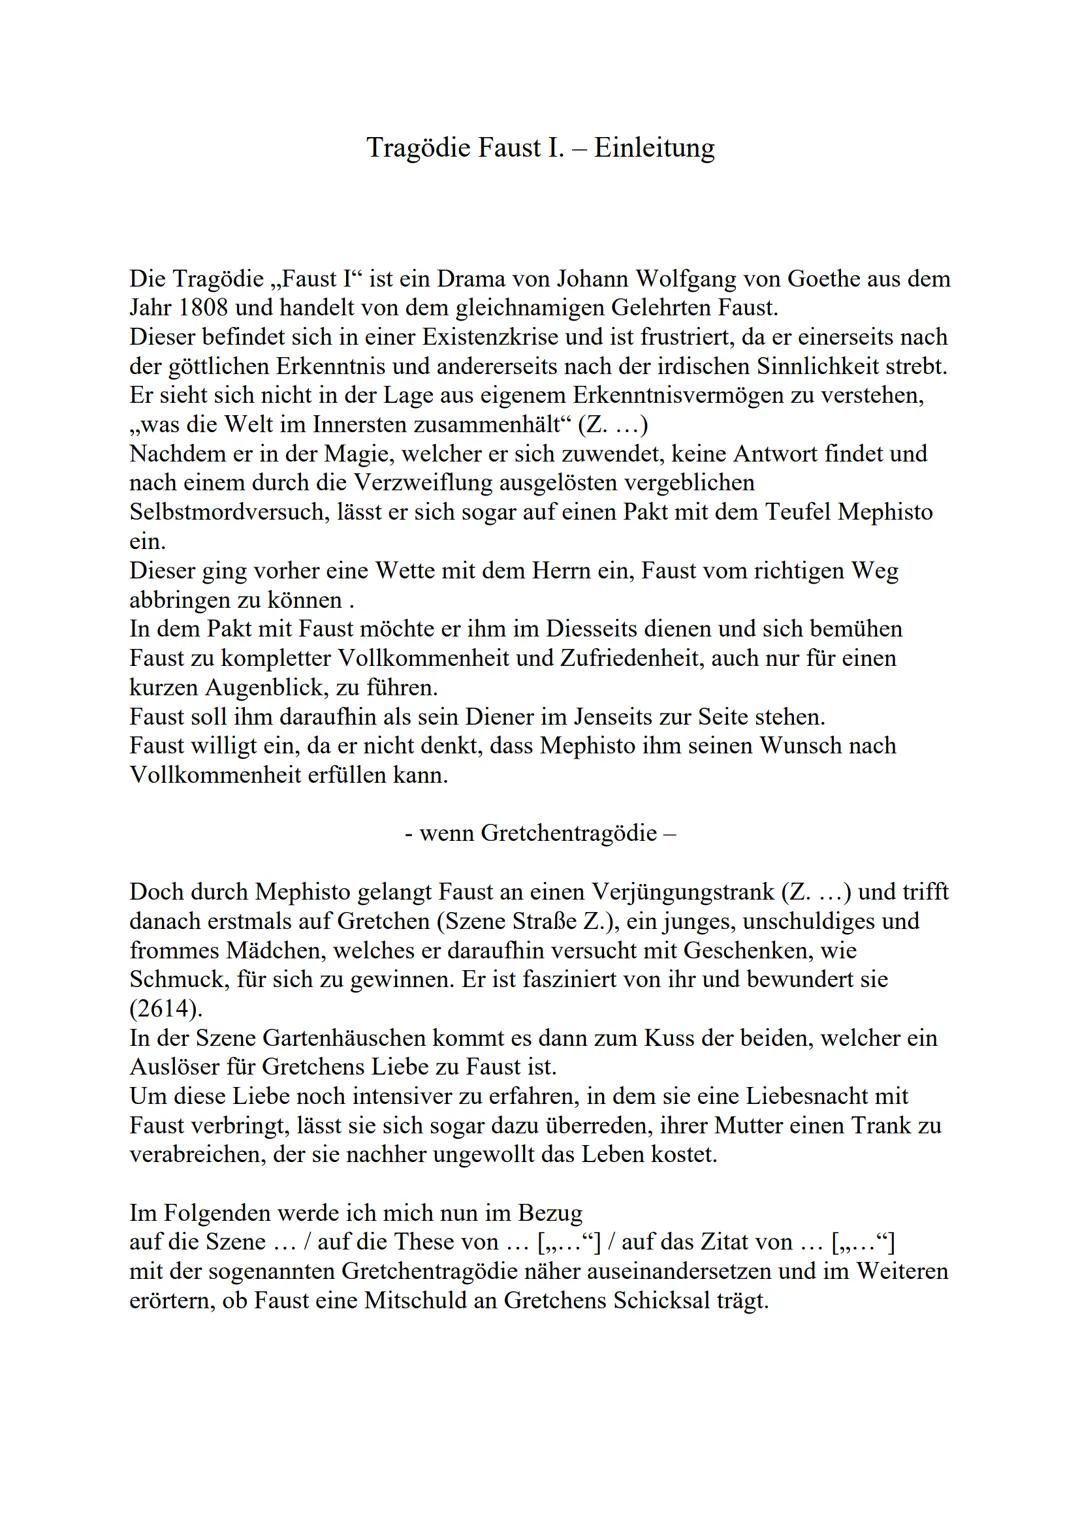 Tragödie Faust I. - Einleitung
Die Tragödie ,,Faust I“ ist ein Drama von Johann Wolfgang von Goethe aus dem
Jahr 1808 und handelt von dem gl